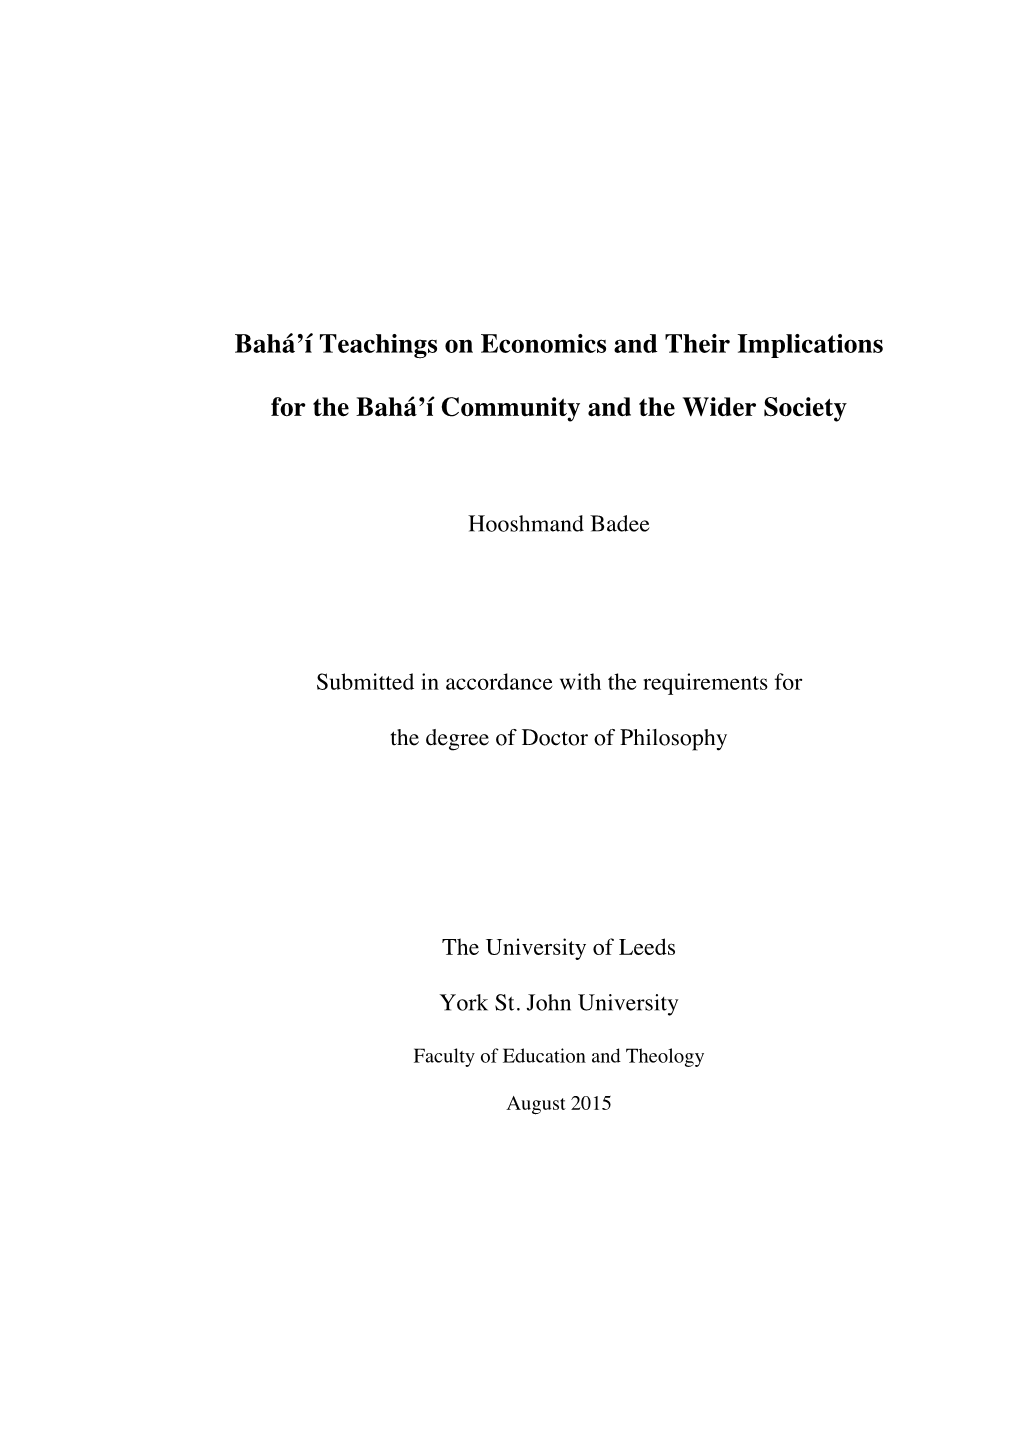 Bahá'í Teachings on Economics and Their Implications for the Bahá'í